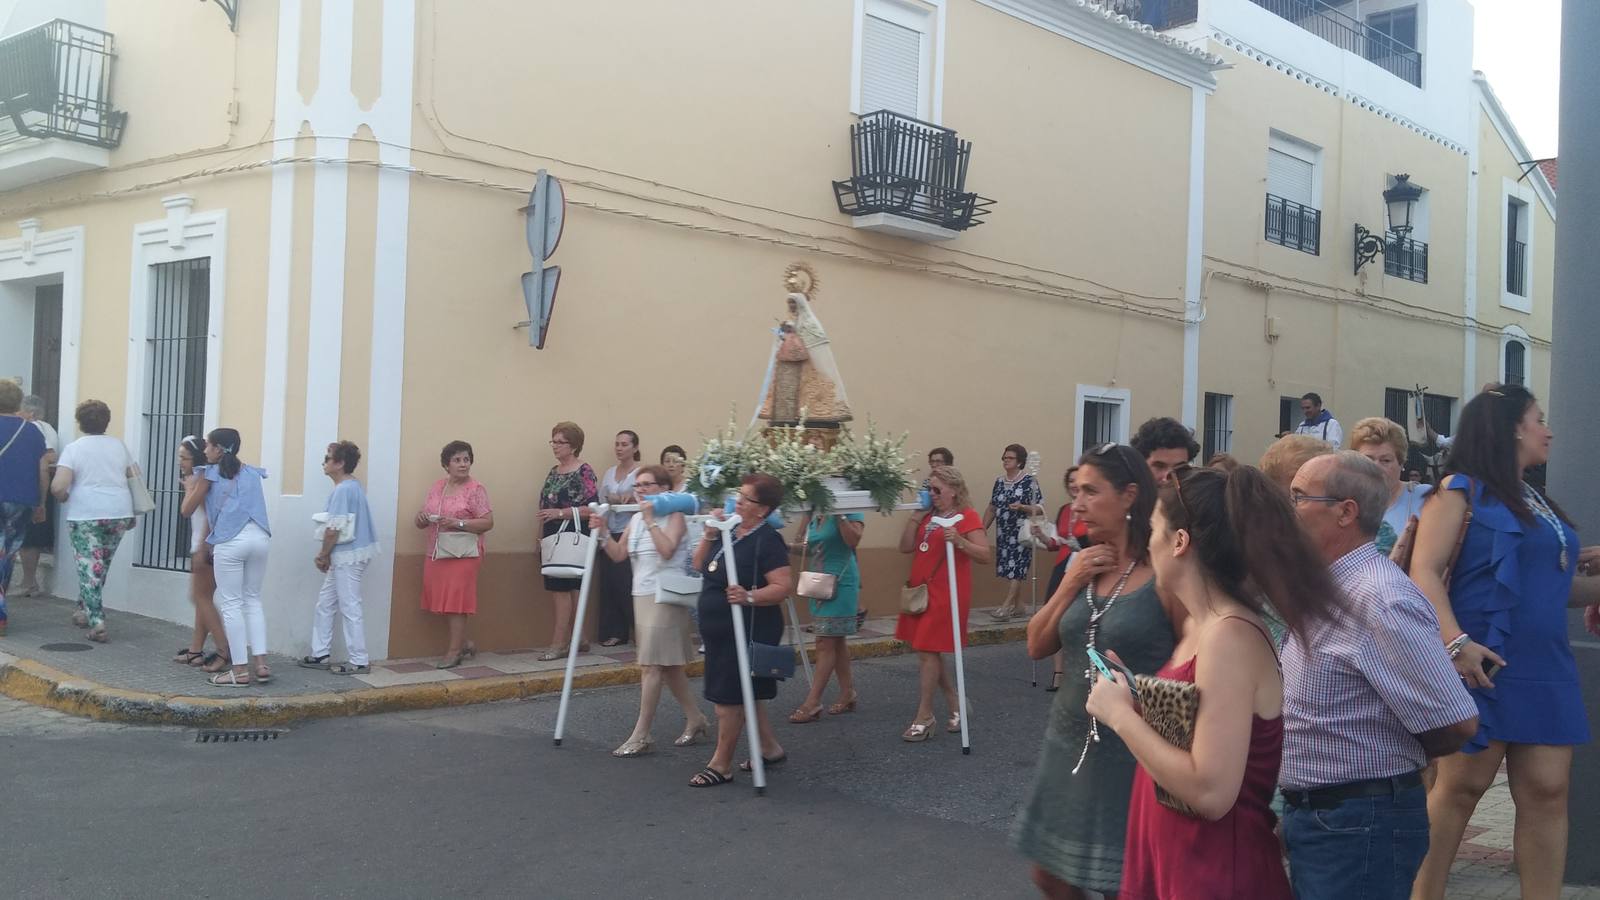 Procesión de "La morenita" por la calle Malfeitos a Estacada y arropada por fieles devotos.